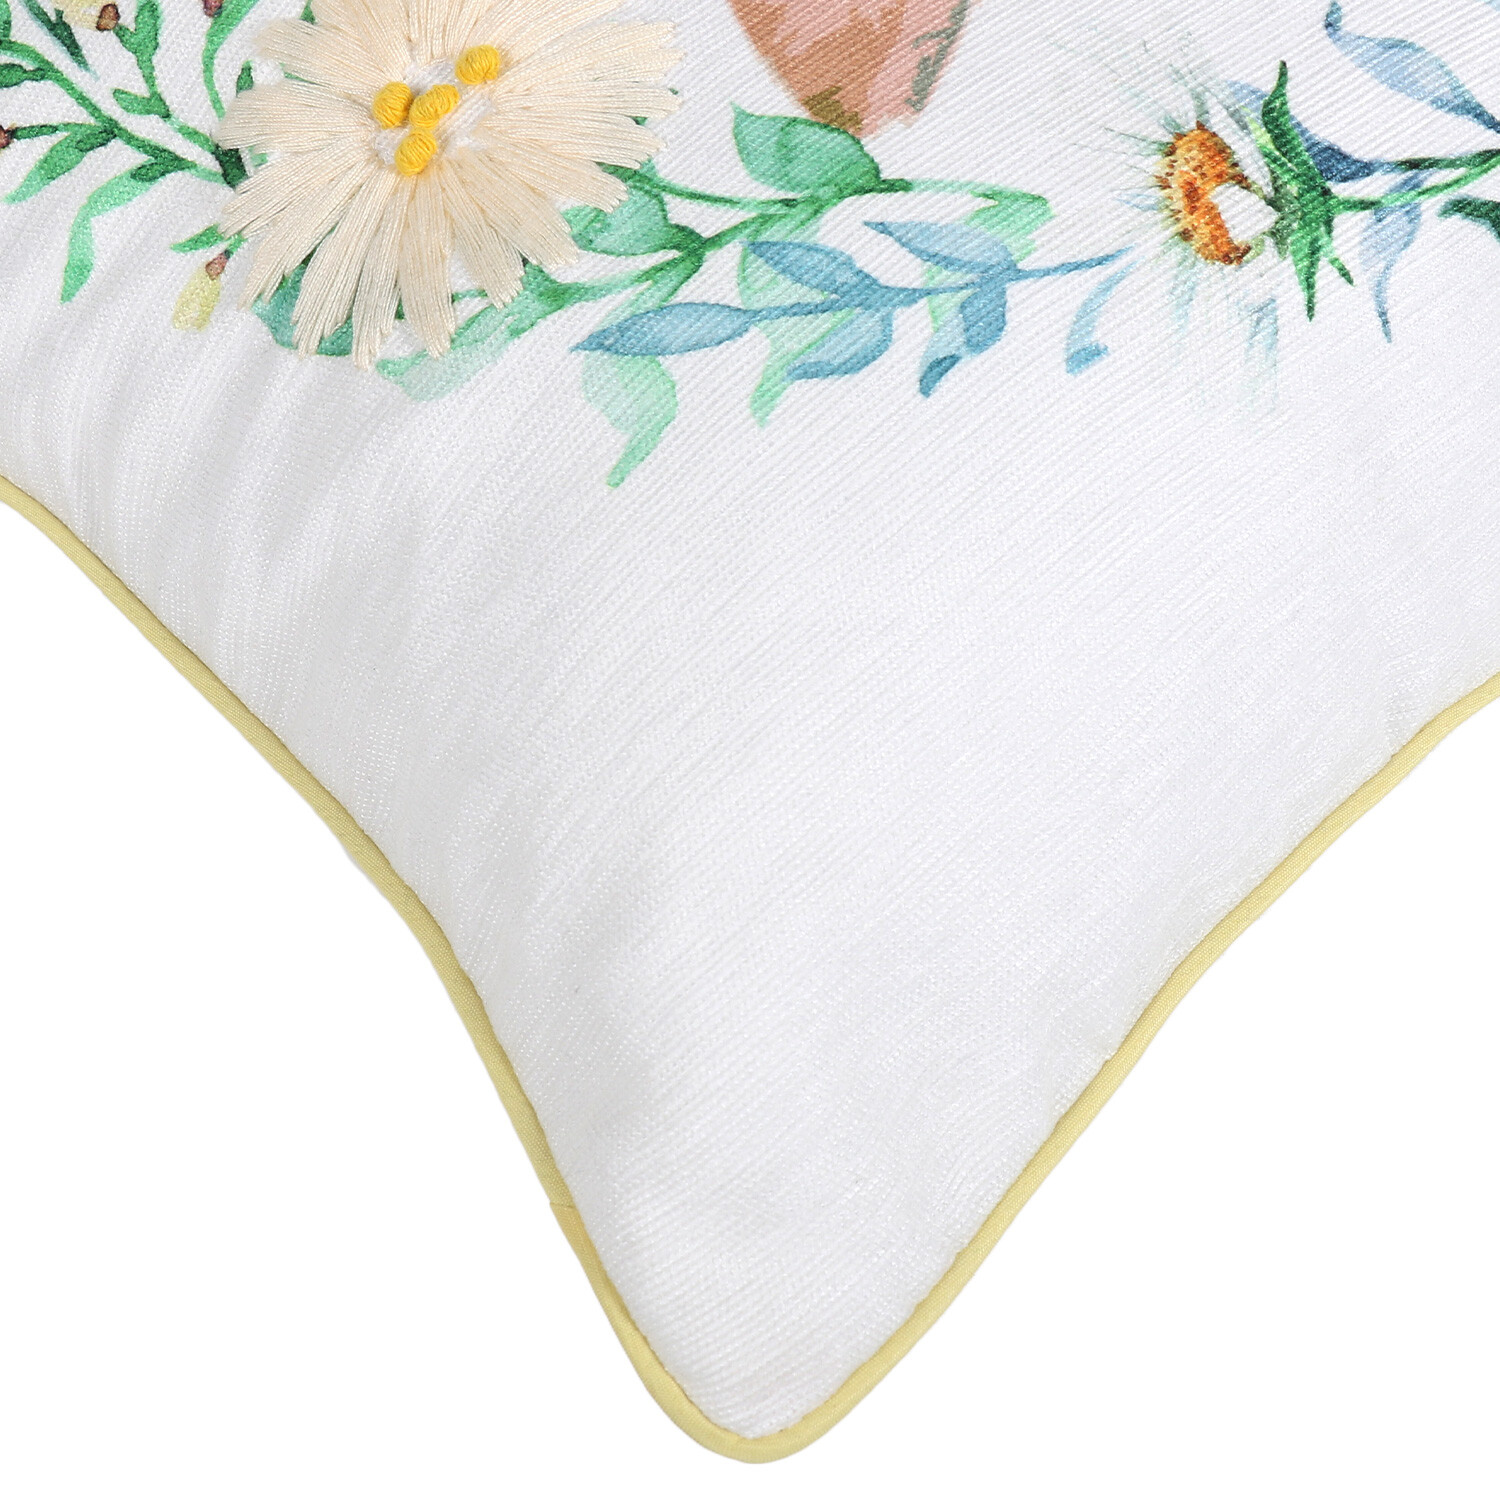 Woodland Bunny Cushion - White Image 3